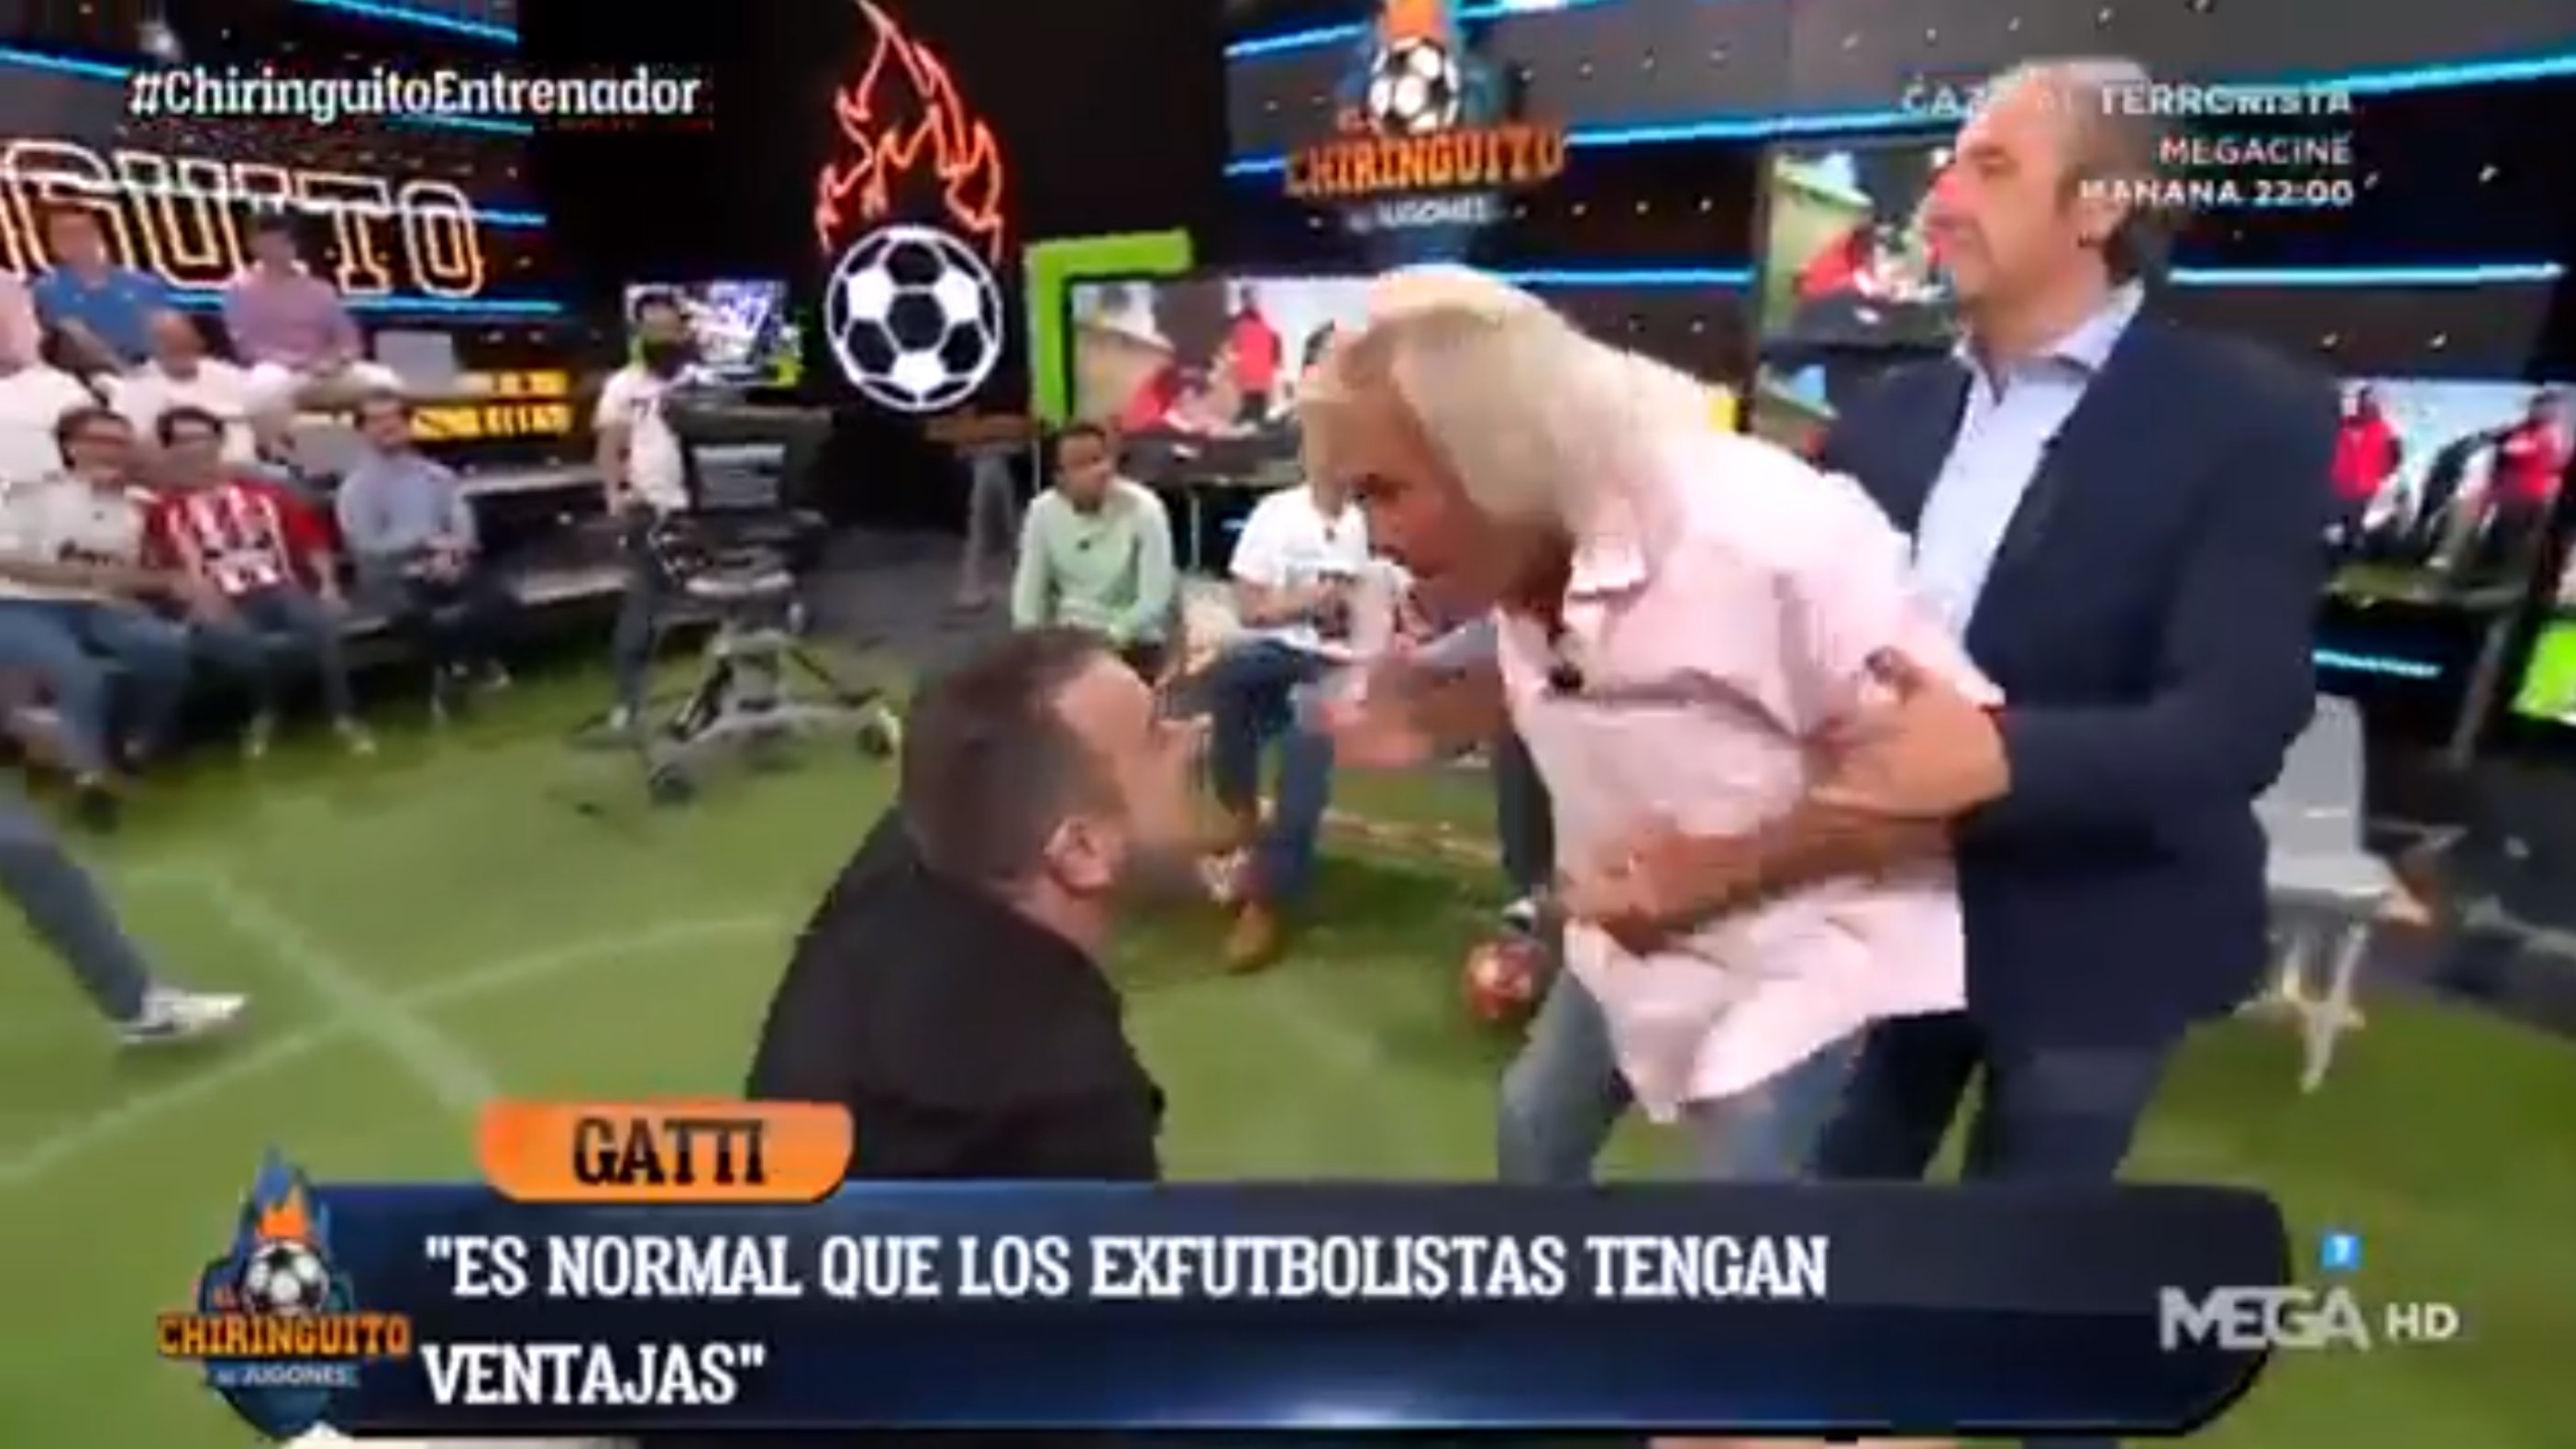 El Loco Gatti roza una nueva agresión en "El Chiringuito": "Tenés cara de tonto"